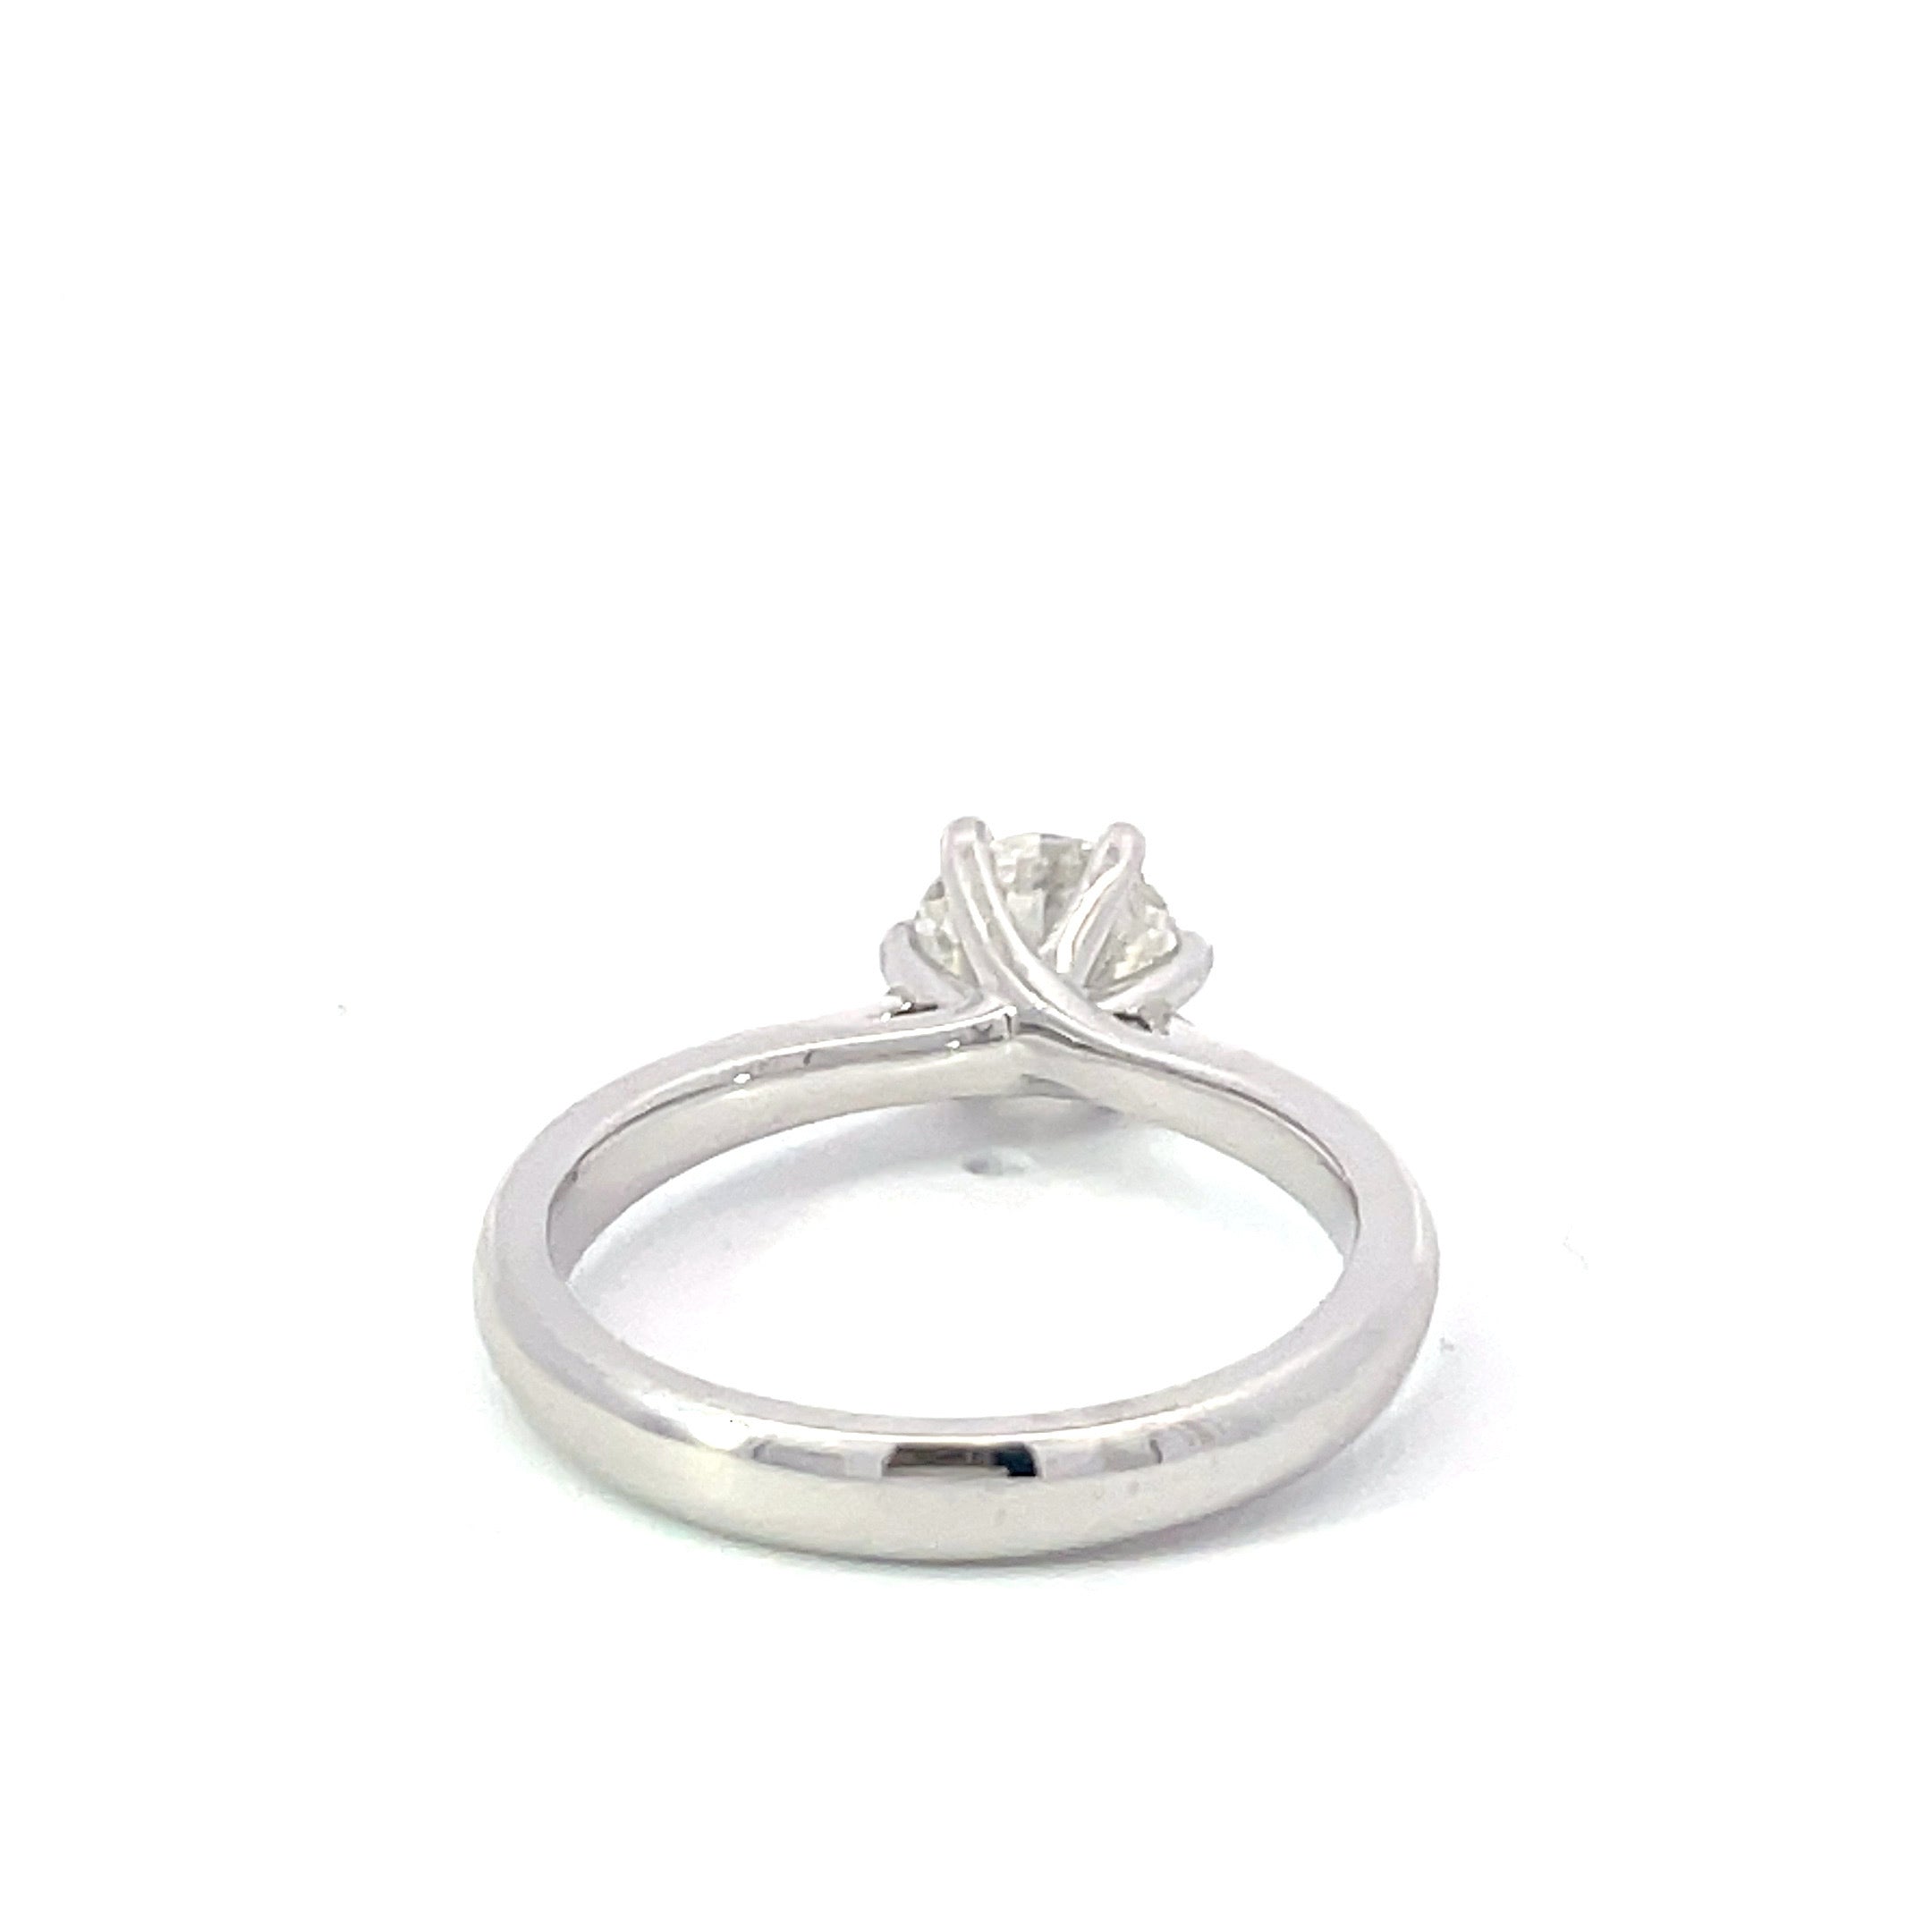 18ct White Gold Passion8 Round Brilliant Diamond Solitaire Ring